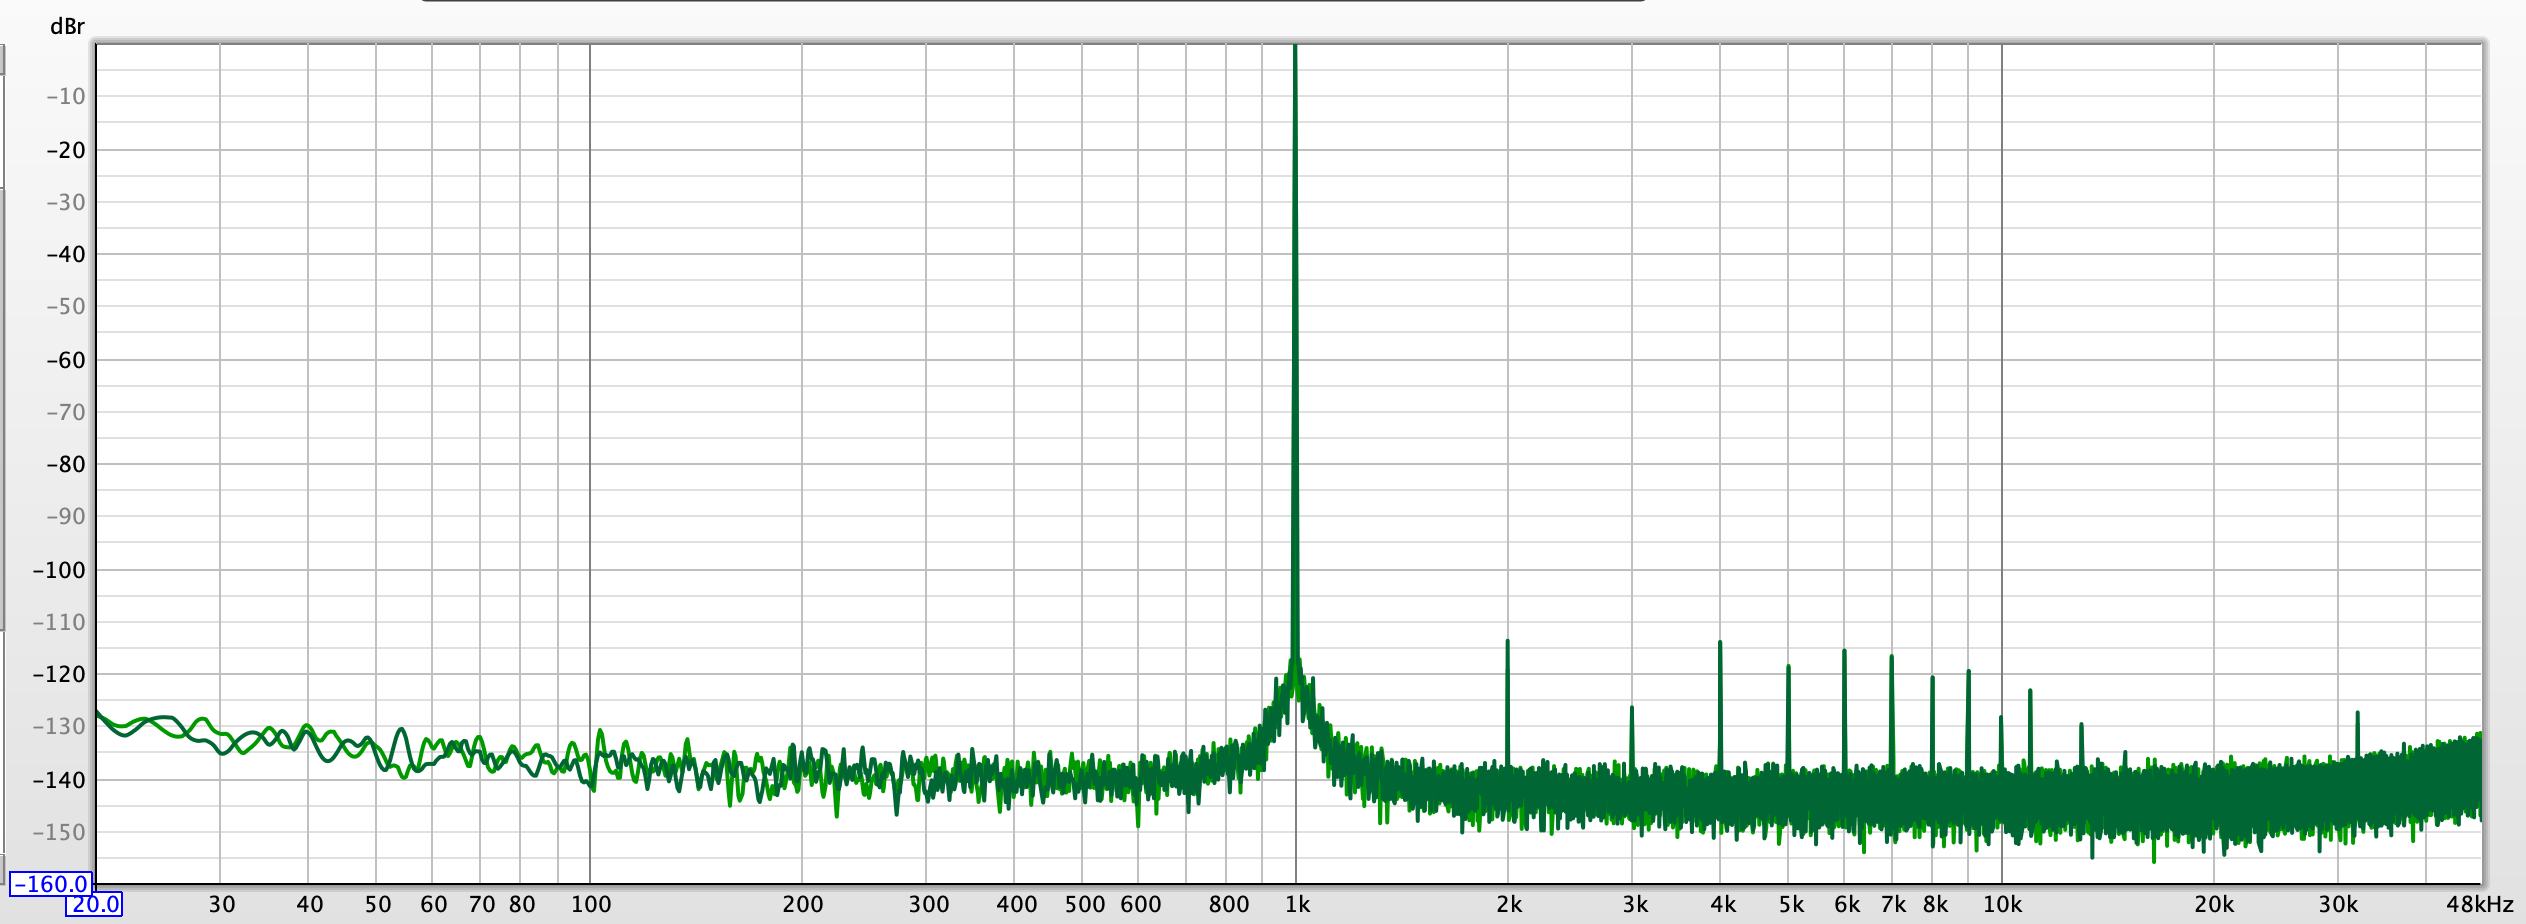 Ch 1-2 1 kHz THD+N 96.png